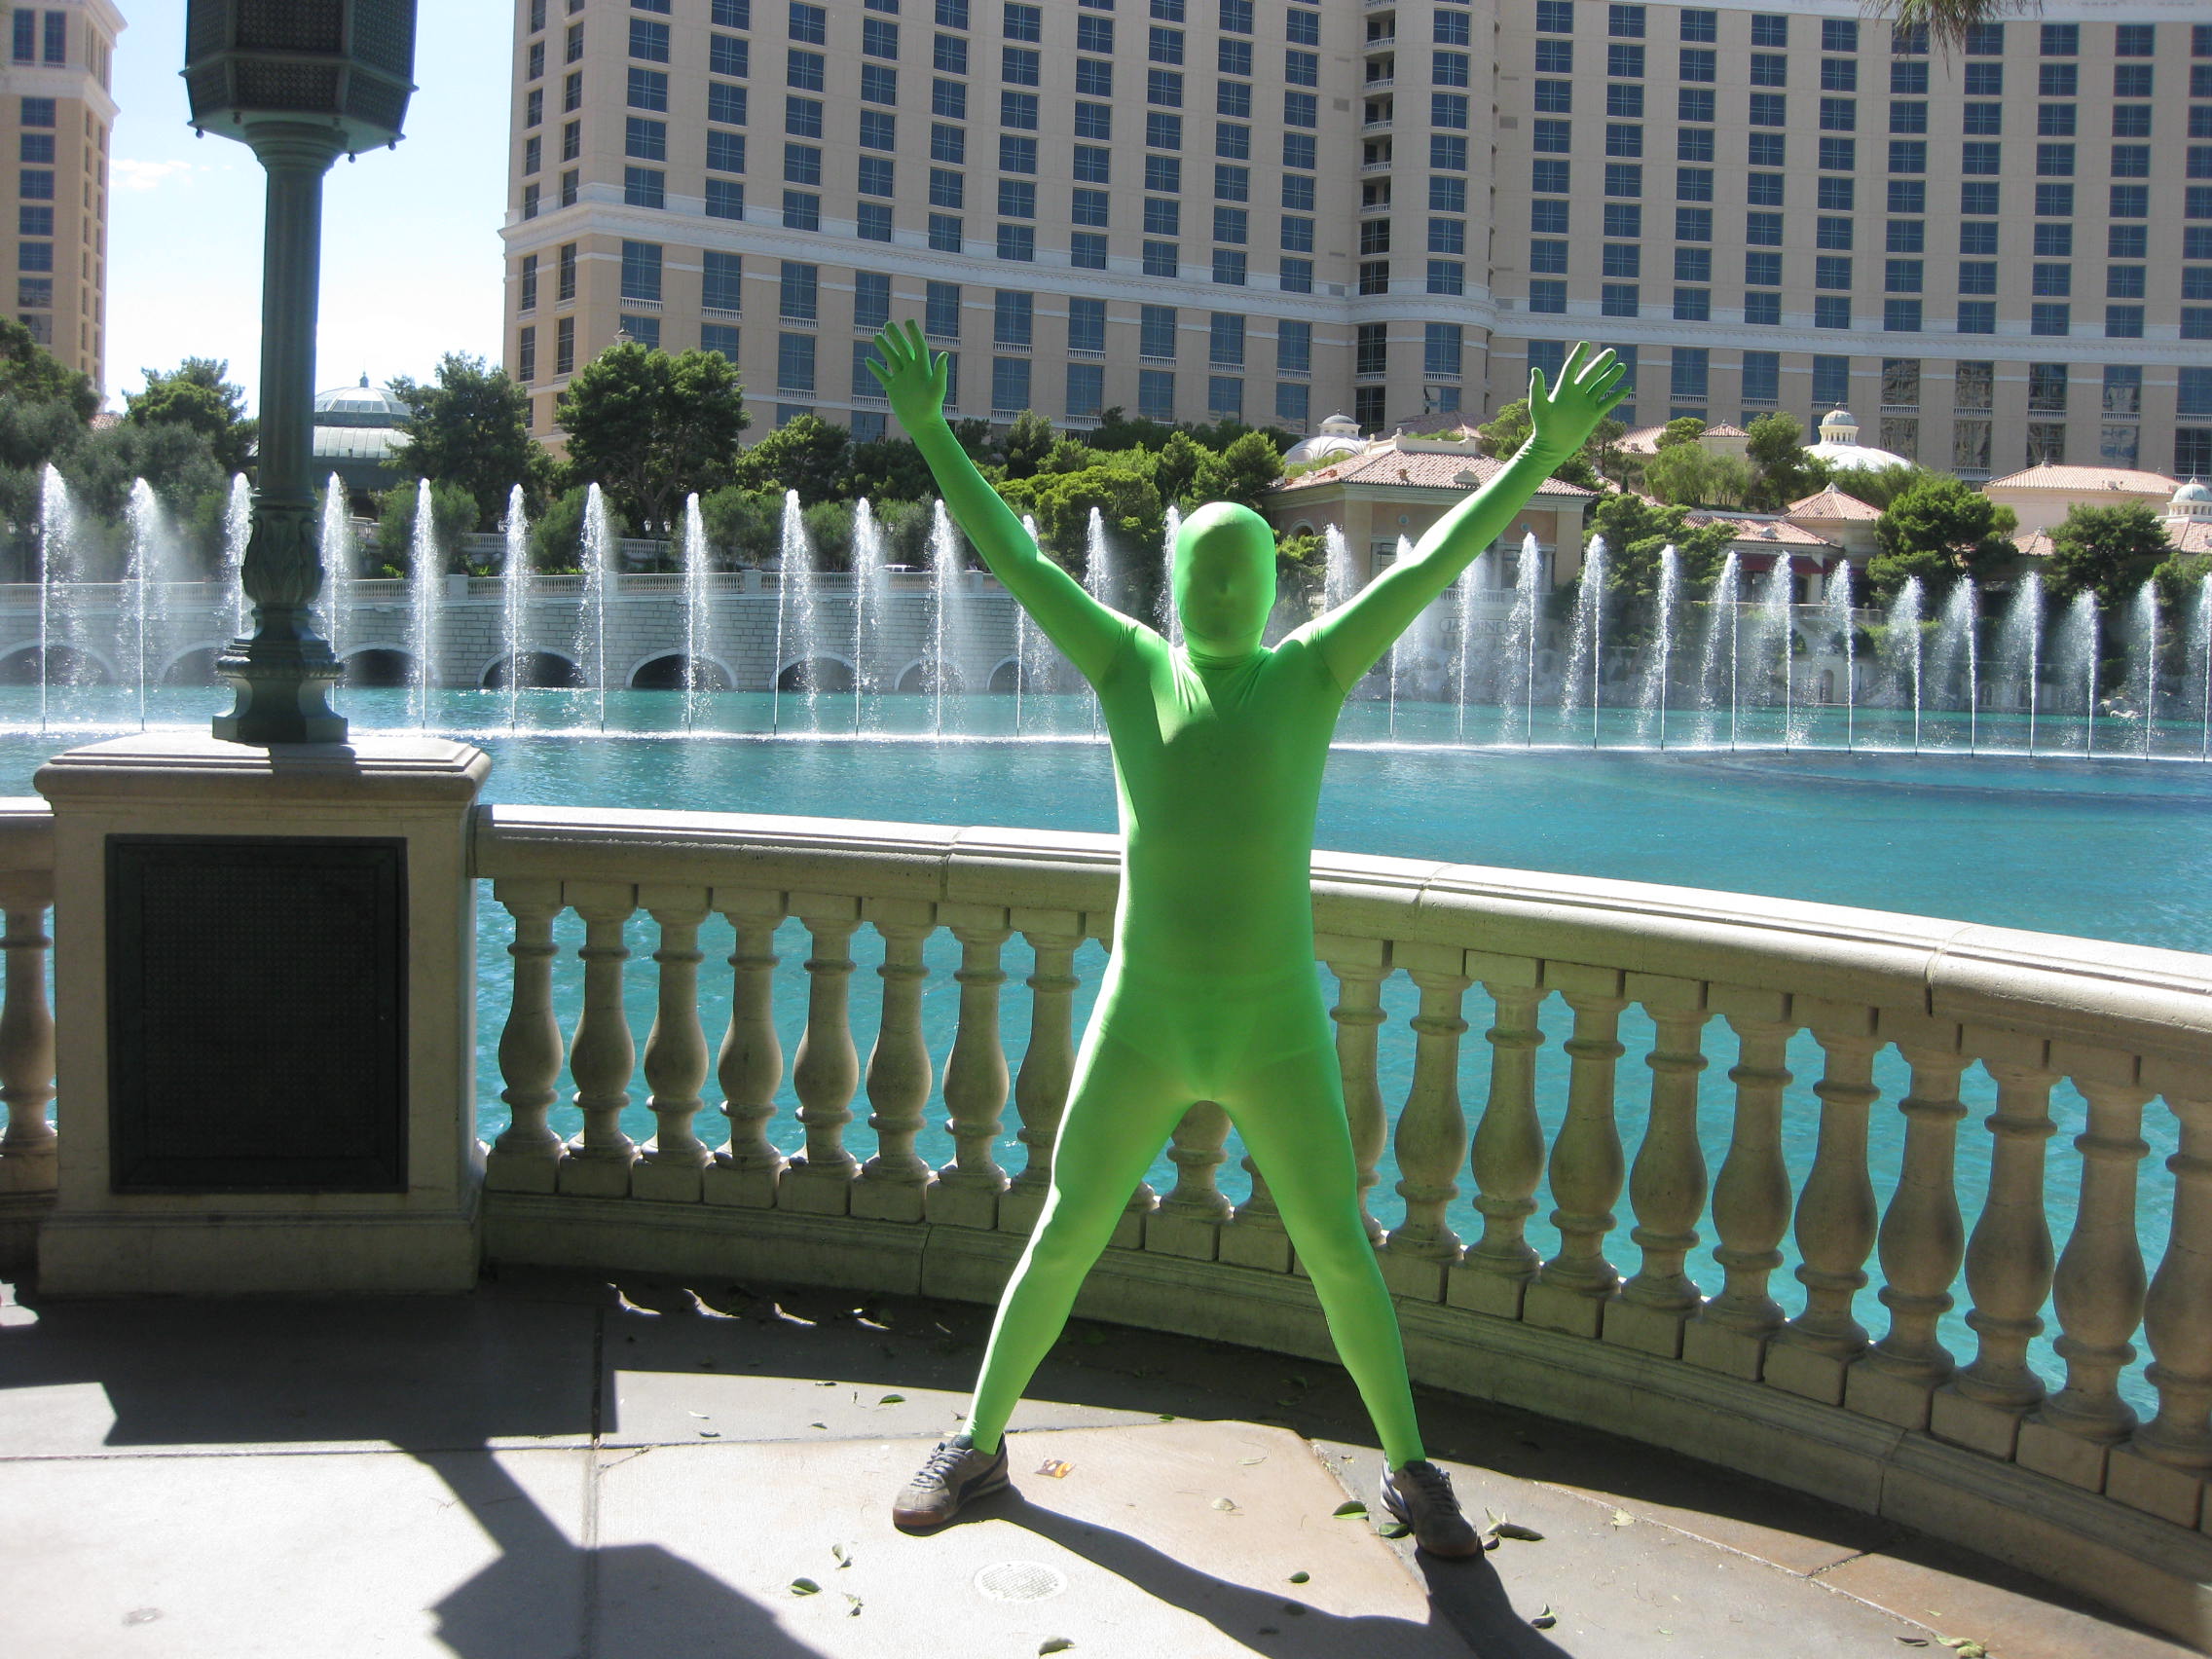 The Green Man Triumphs!